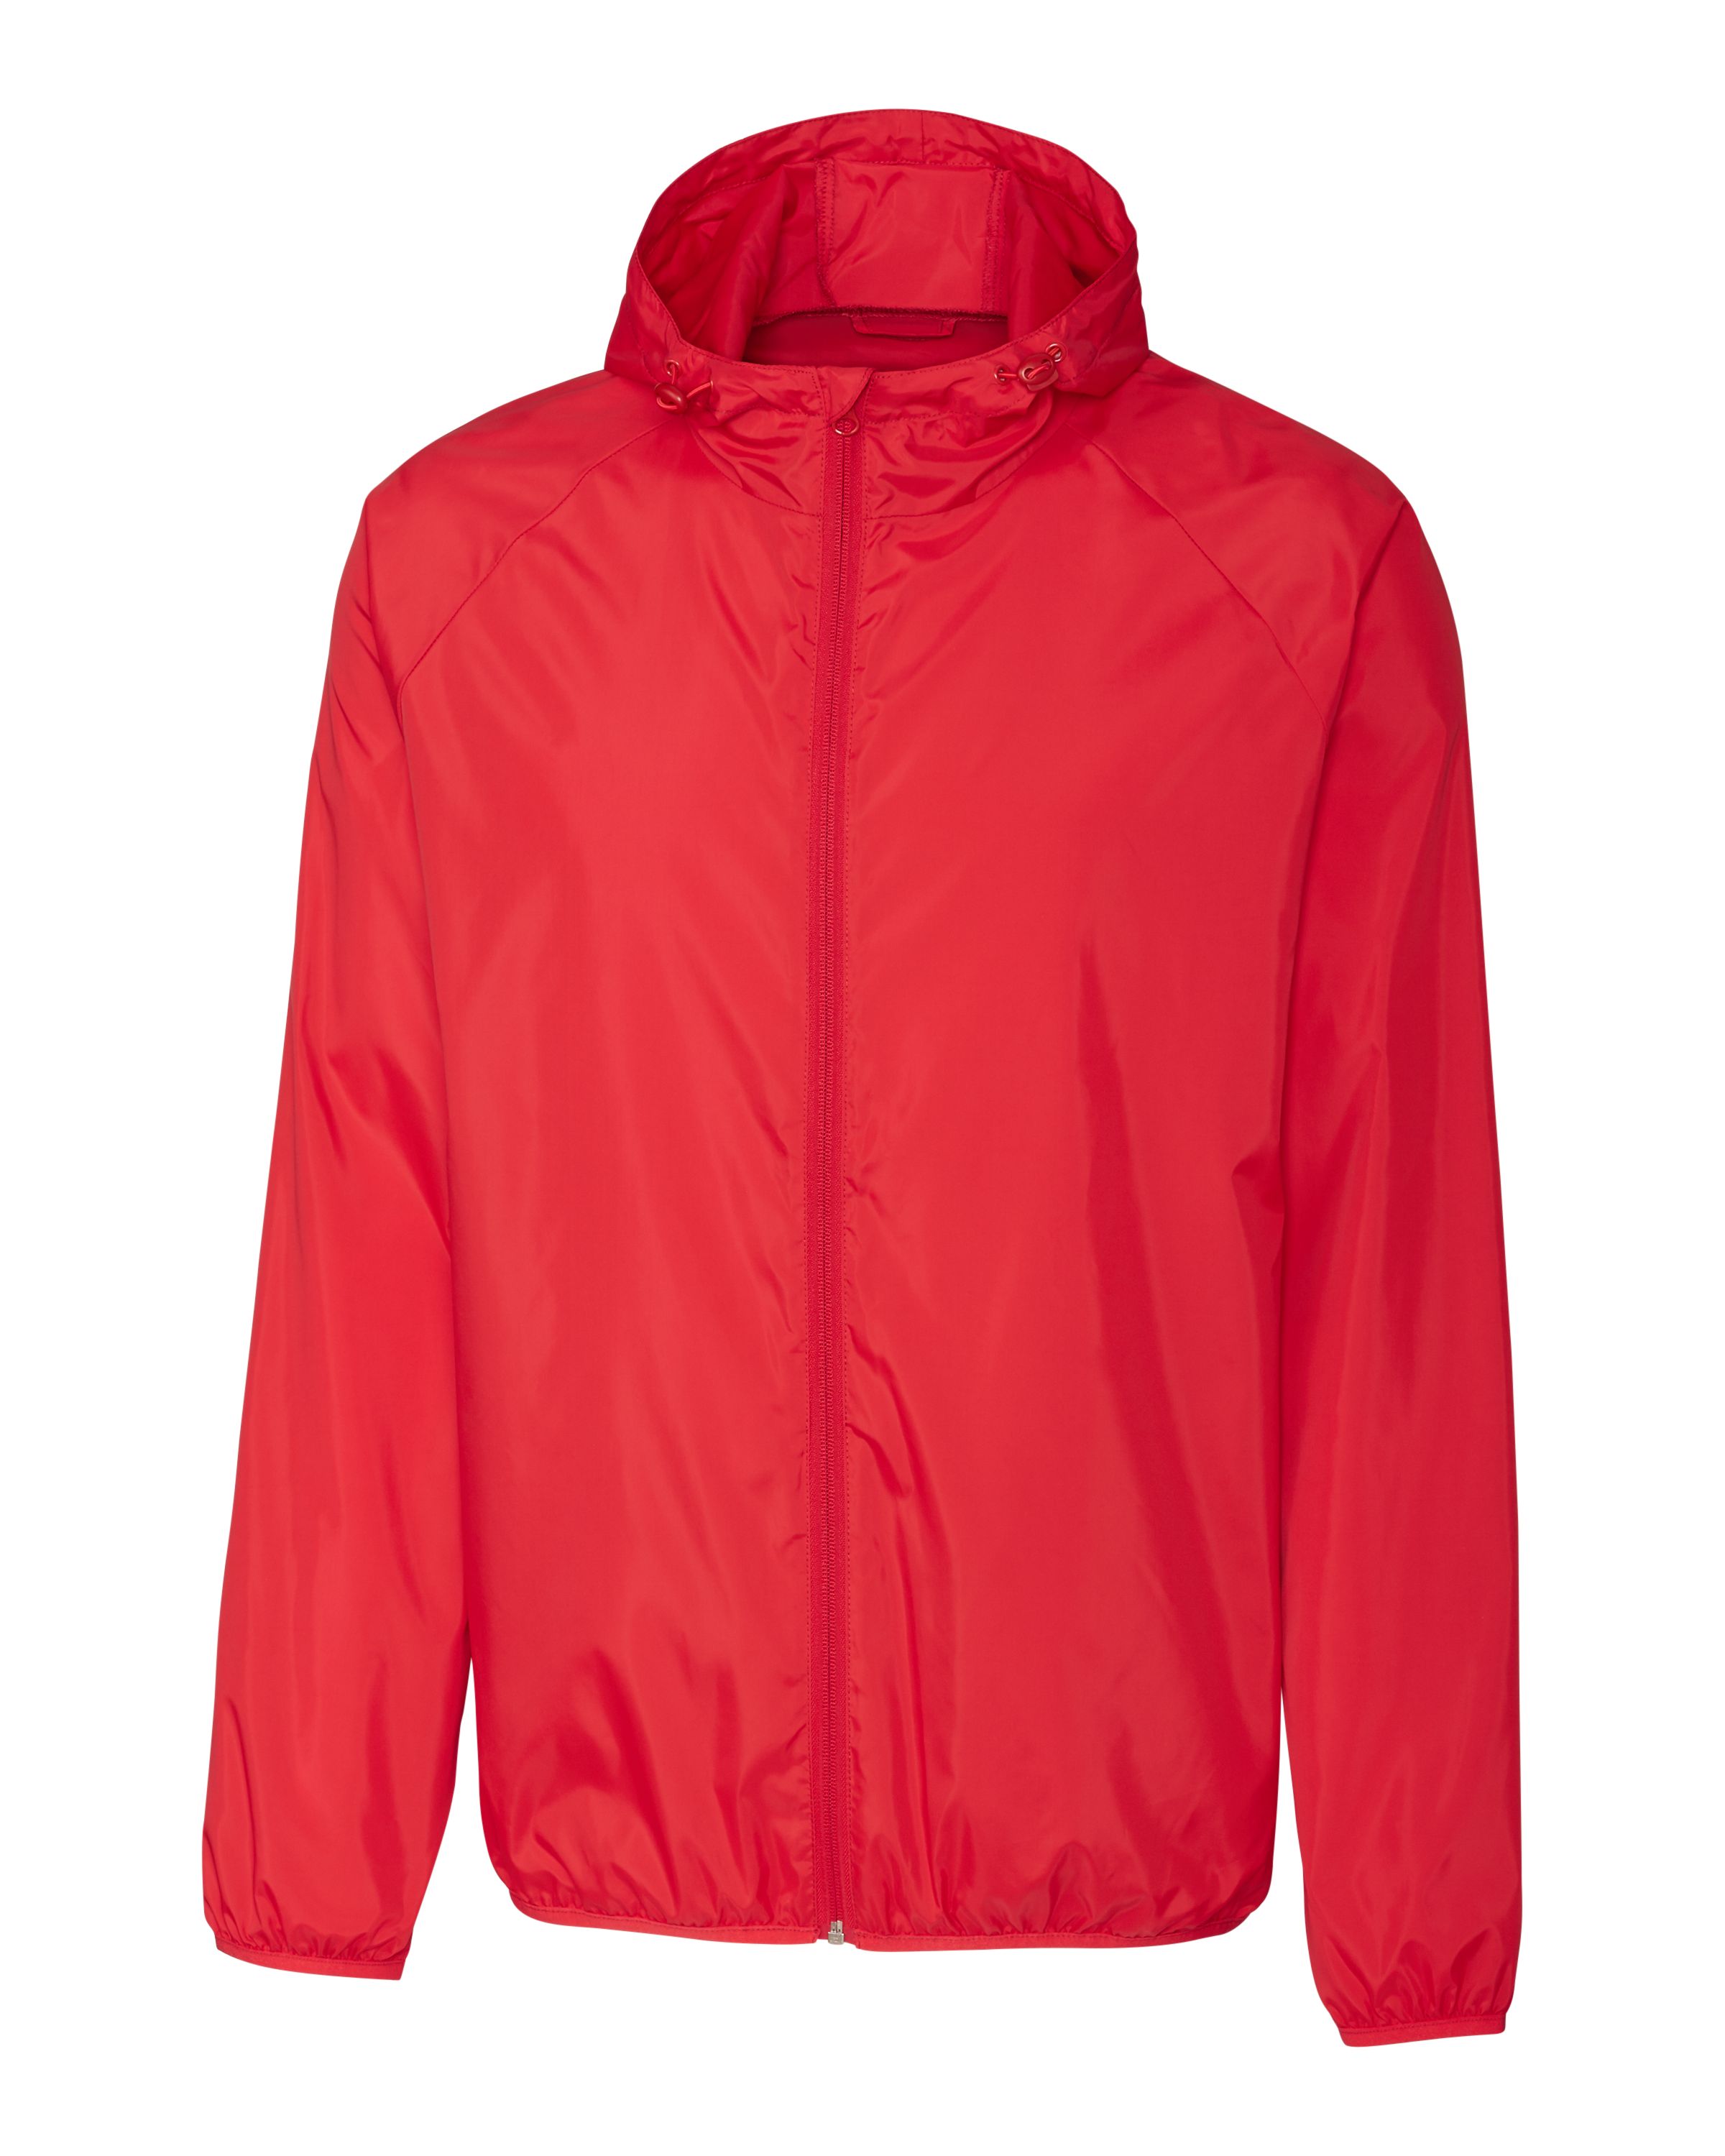 Clique Men's Reliance Water Resistant Packable Full Zip Golf Jacket - image 1 of 2